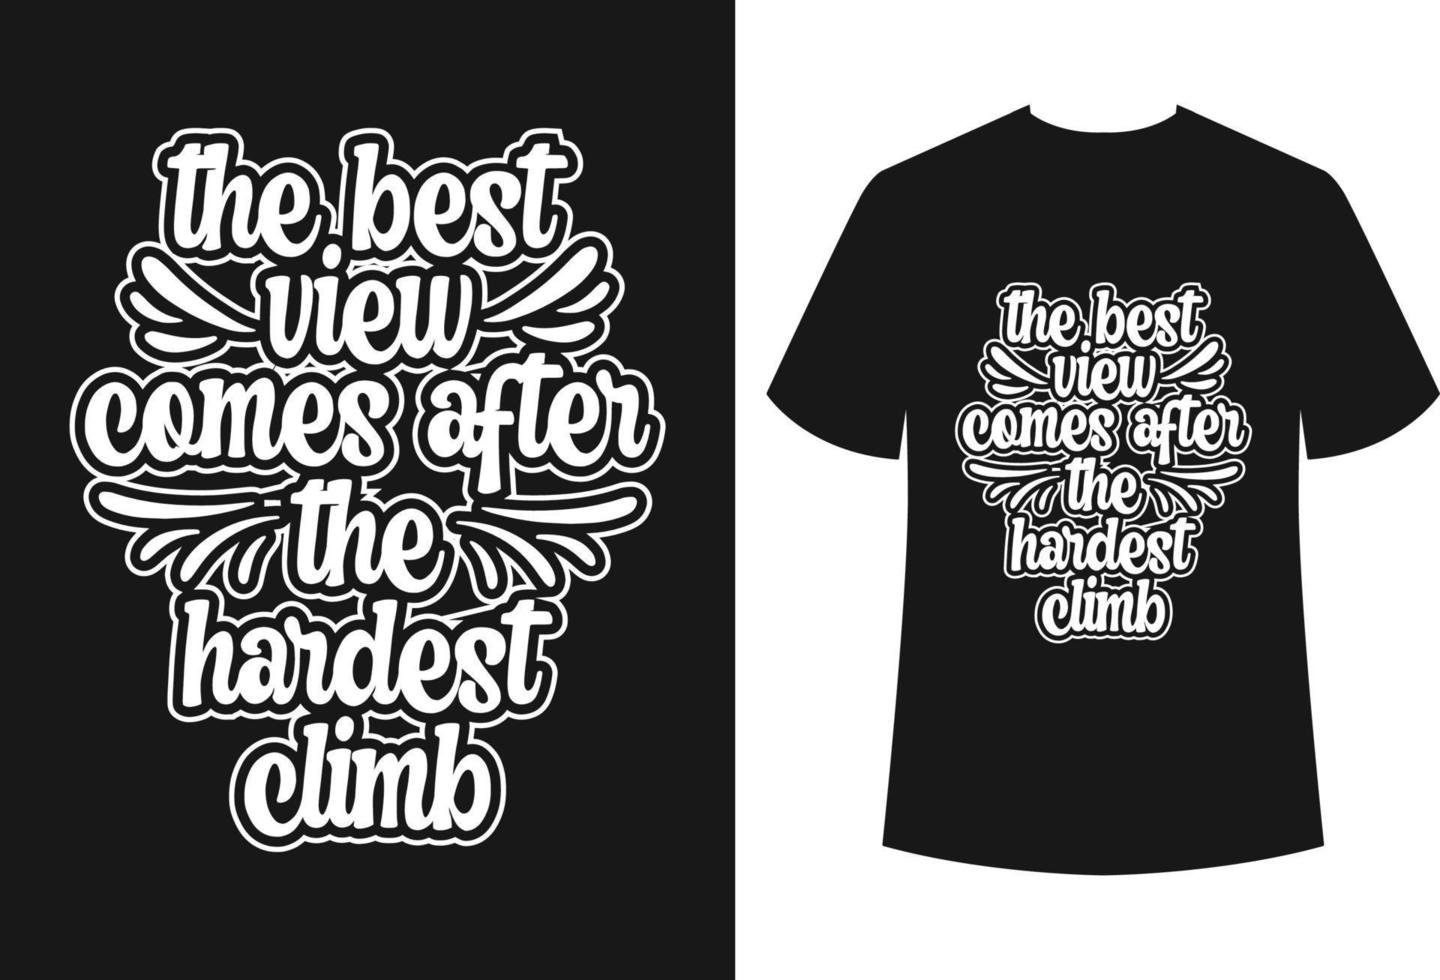 typografie t-shirt ontwerp vector